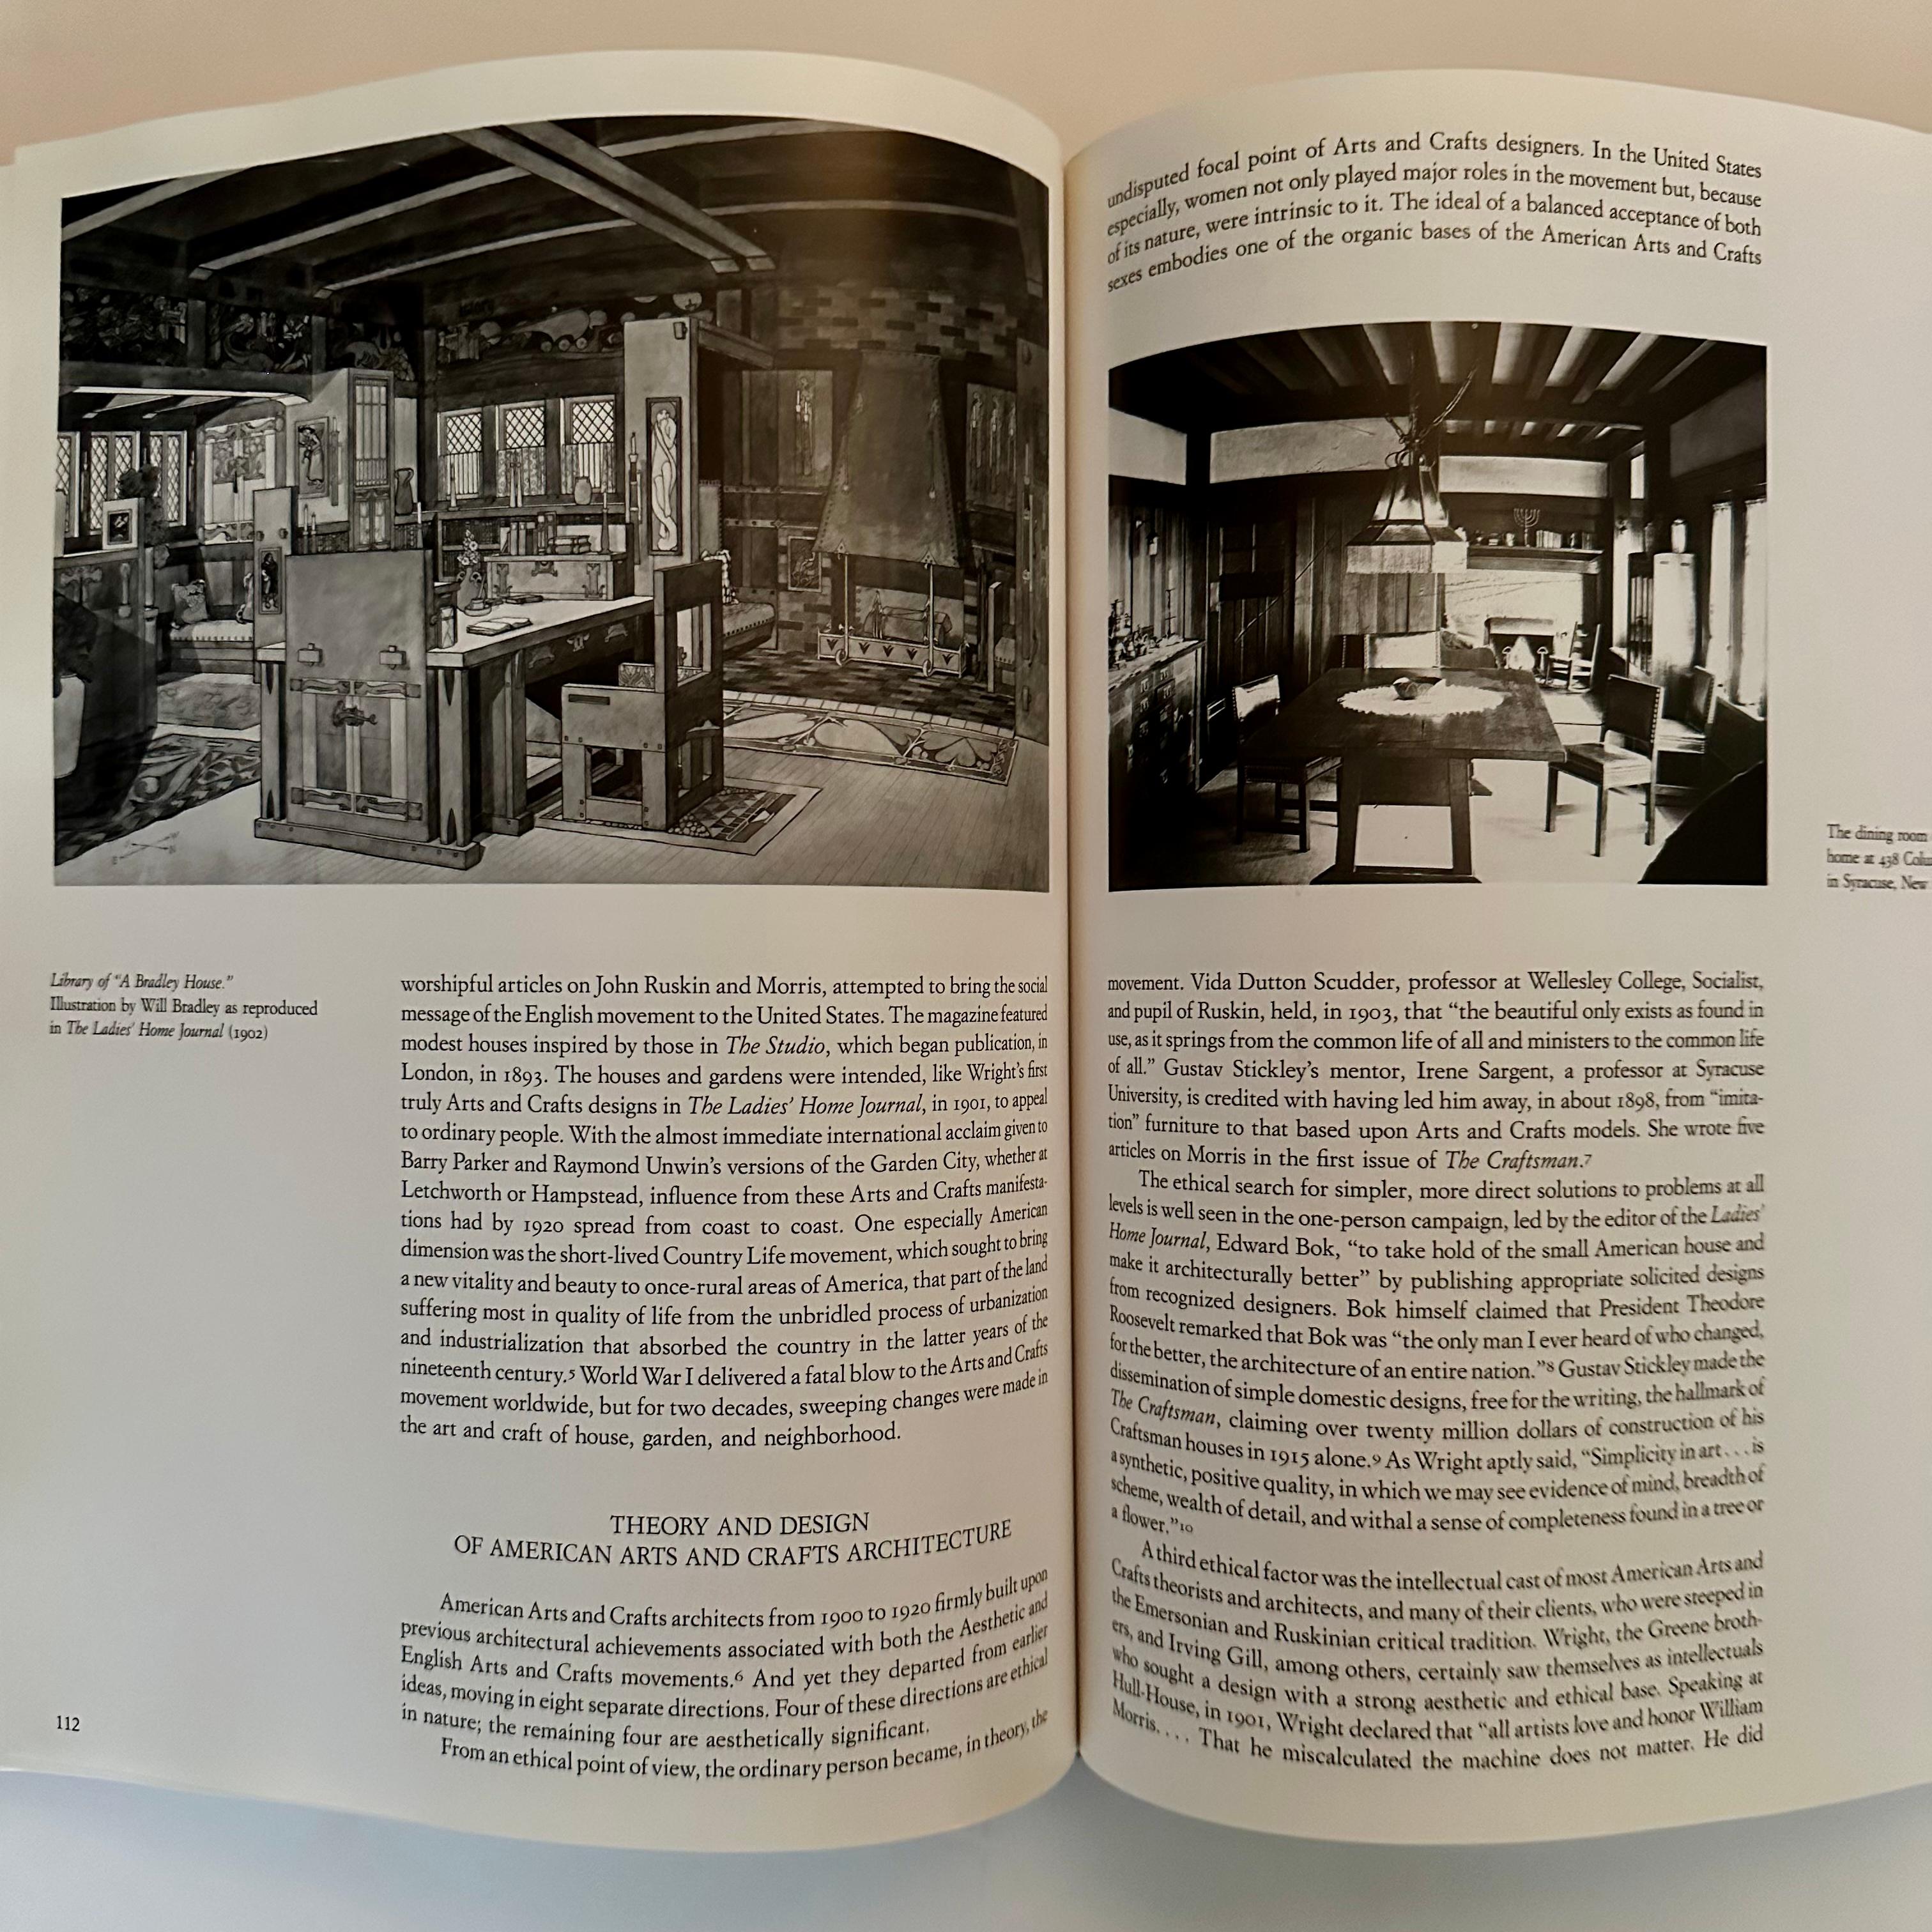 Fin du 20e siècle The Ideal Home - The History of Twentieth-Century American Craft 1900-1920 (La maison idéale - L'histoire de l'artisanat américain du XXe siècle)